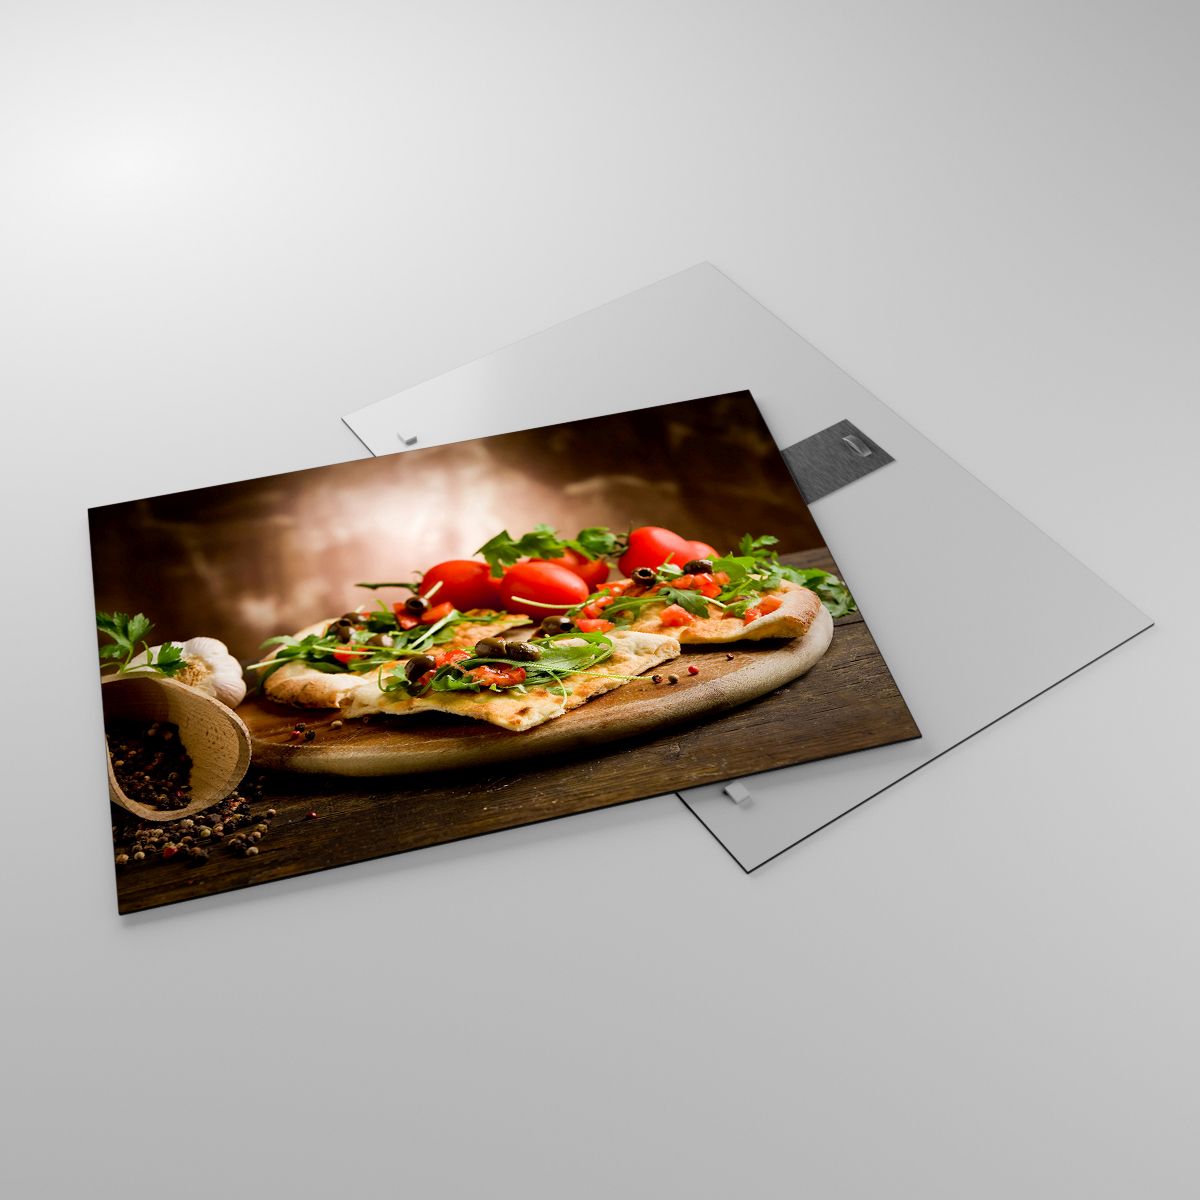 Glasbild Gastronomie, Glasbild Pizza, Glasbild Italien, Glasbild Küche, Glasbild Tomaten